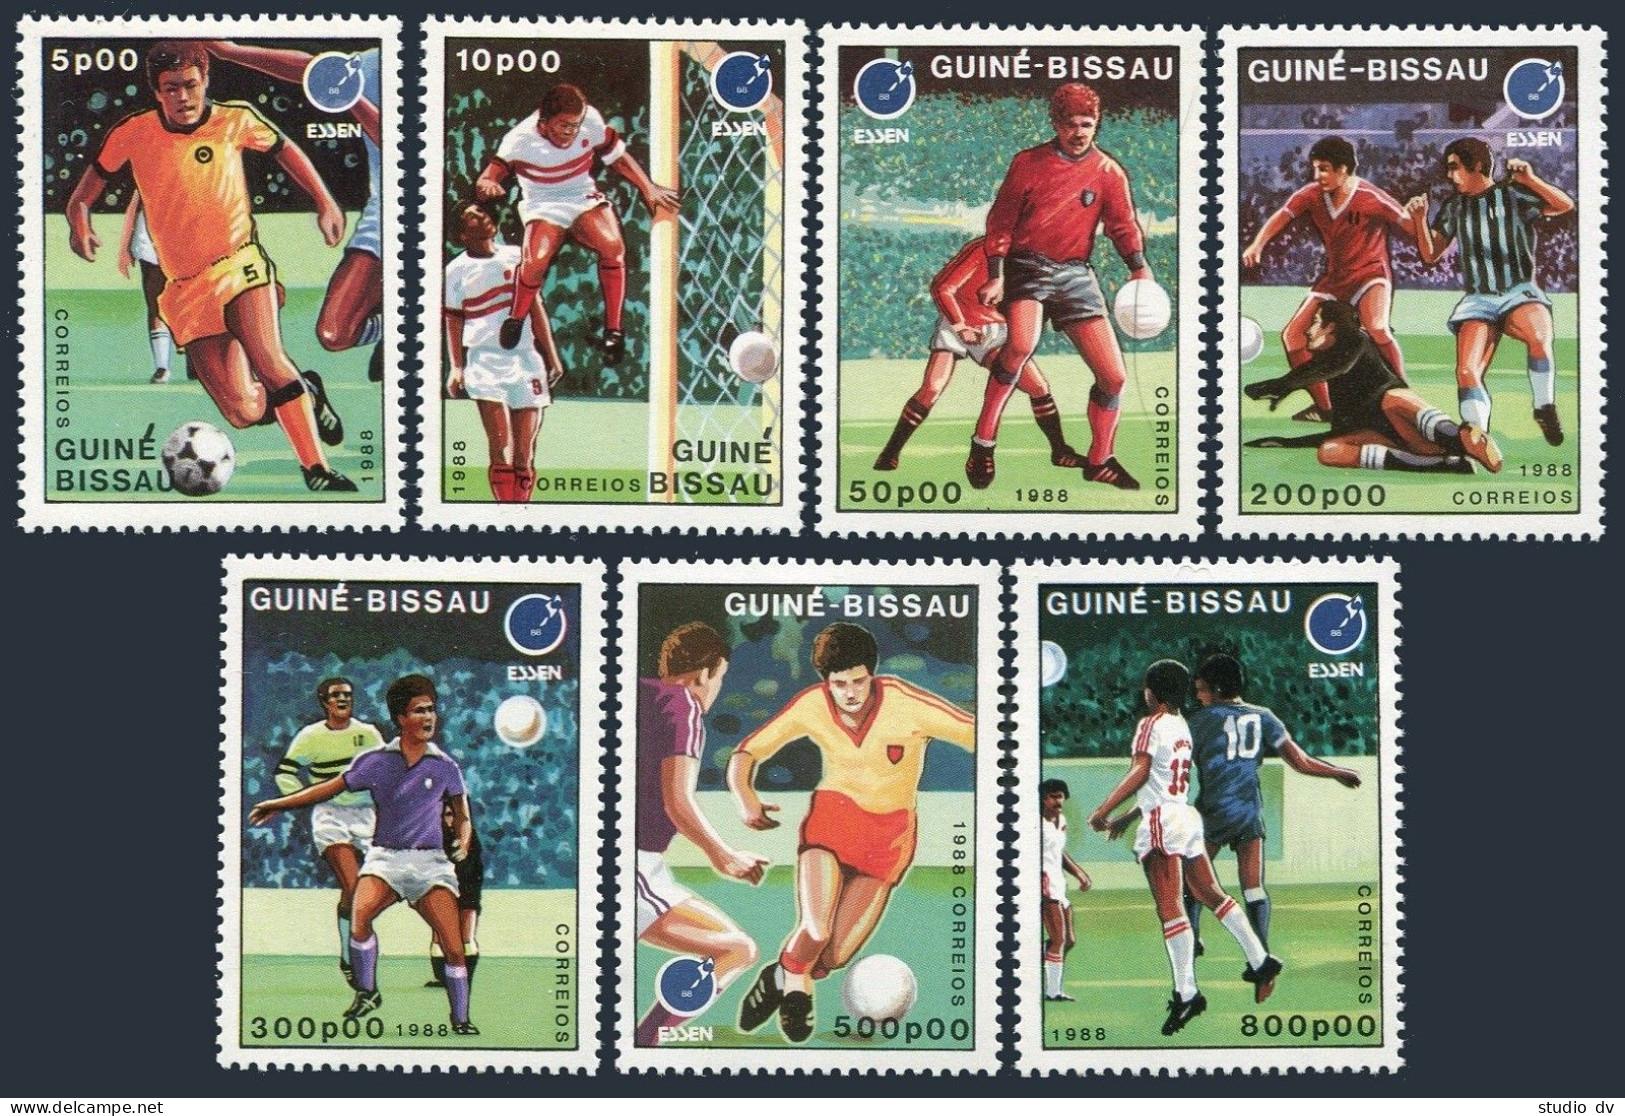 Guinea Bissau 711-717,718,MNH.Michel 943-949,Bl.272. Soccer,ESSEN-1988. - Guinea-Bissau